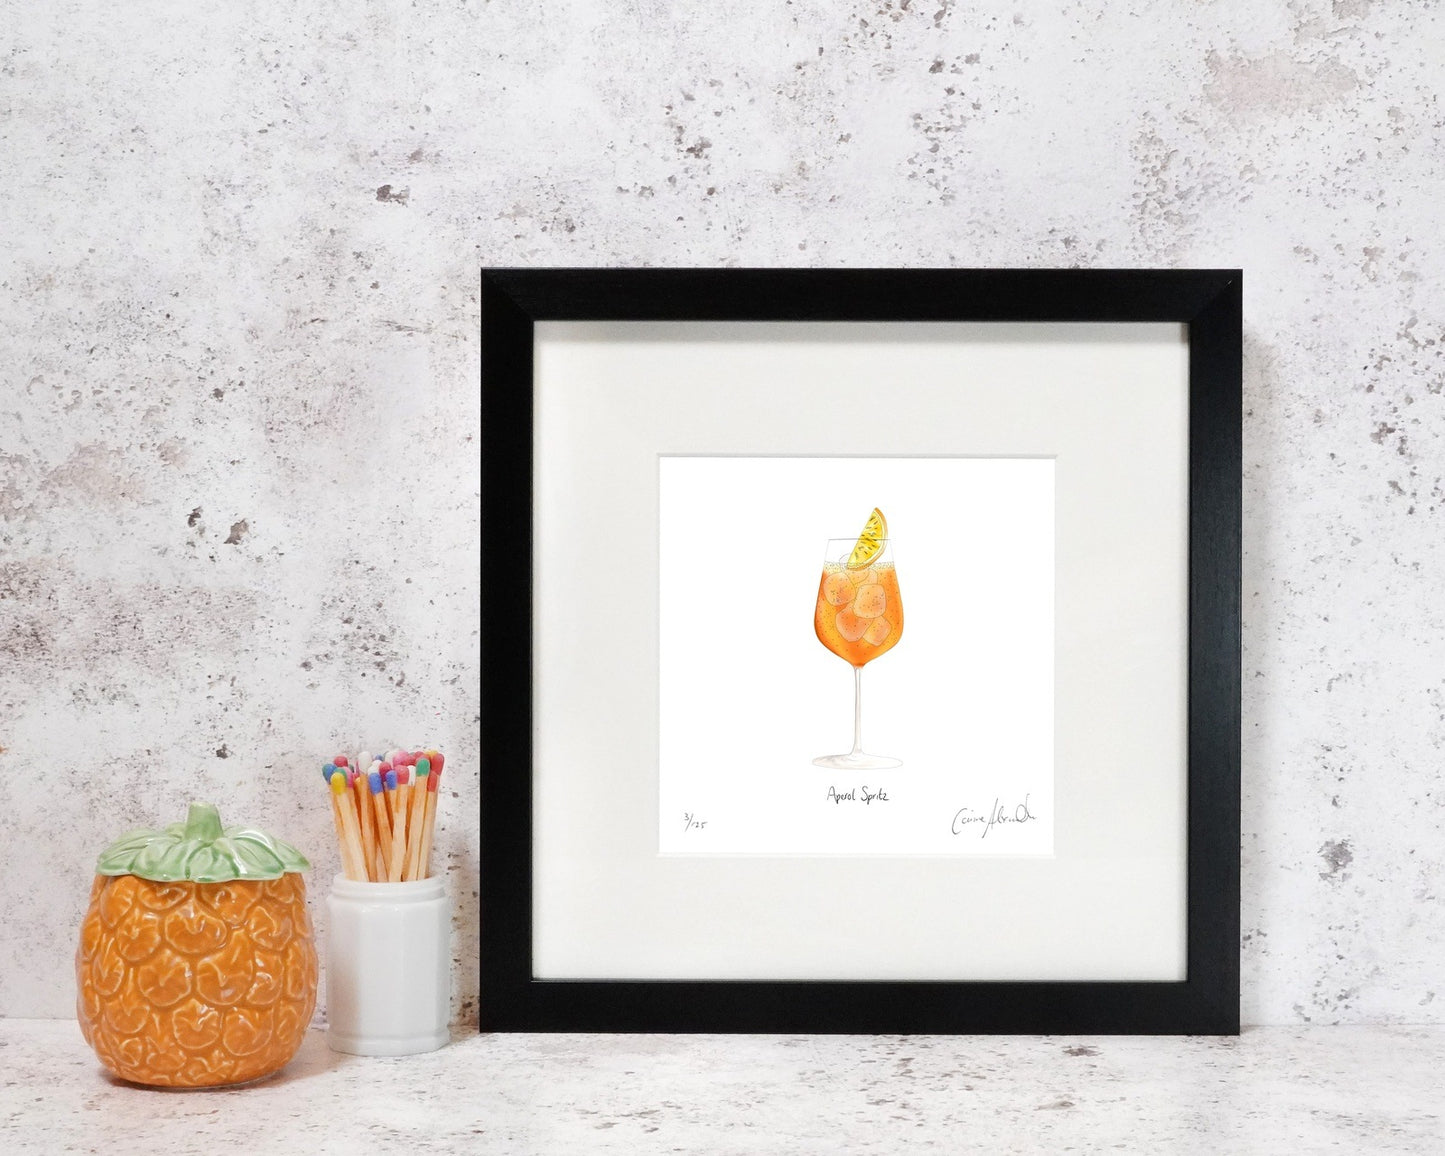 Framed aperol spritz cocktail print